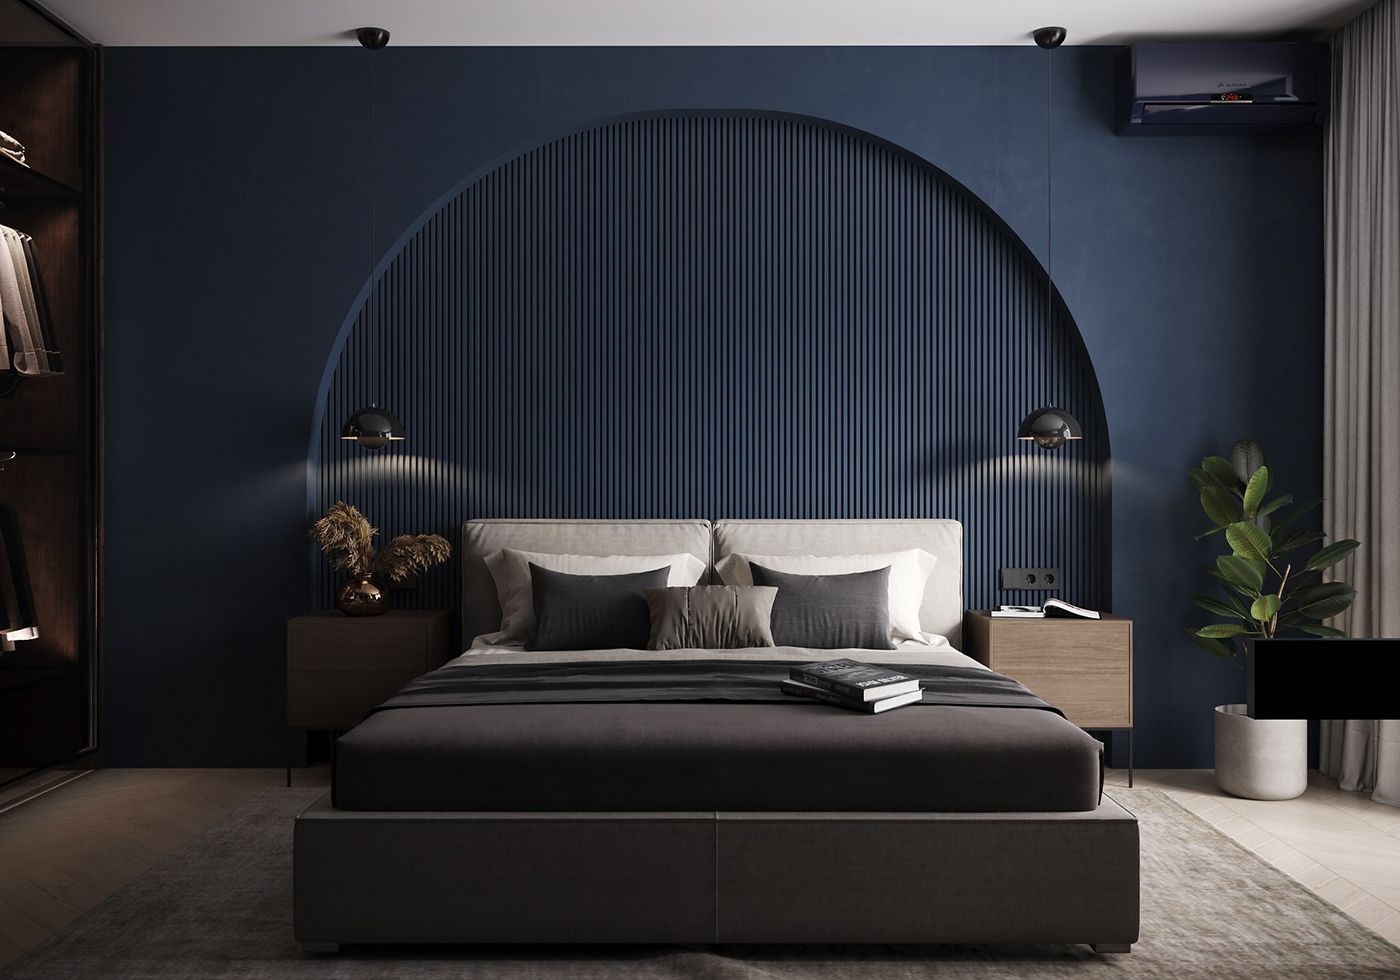 Sơn màu xanh tường phòng ngủ